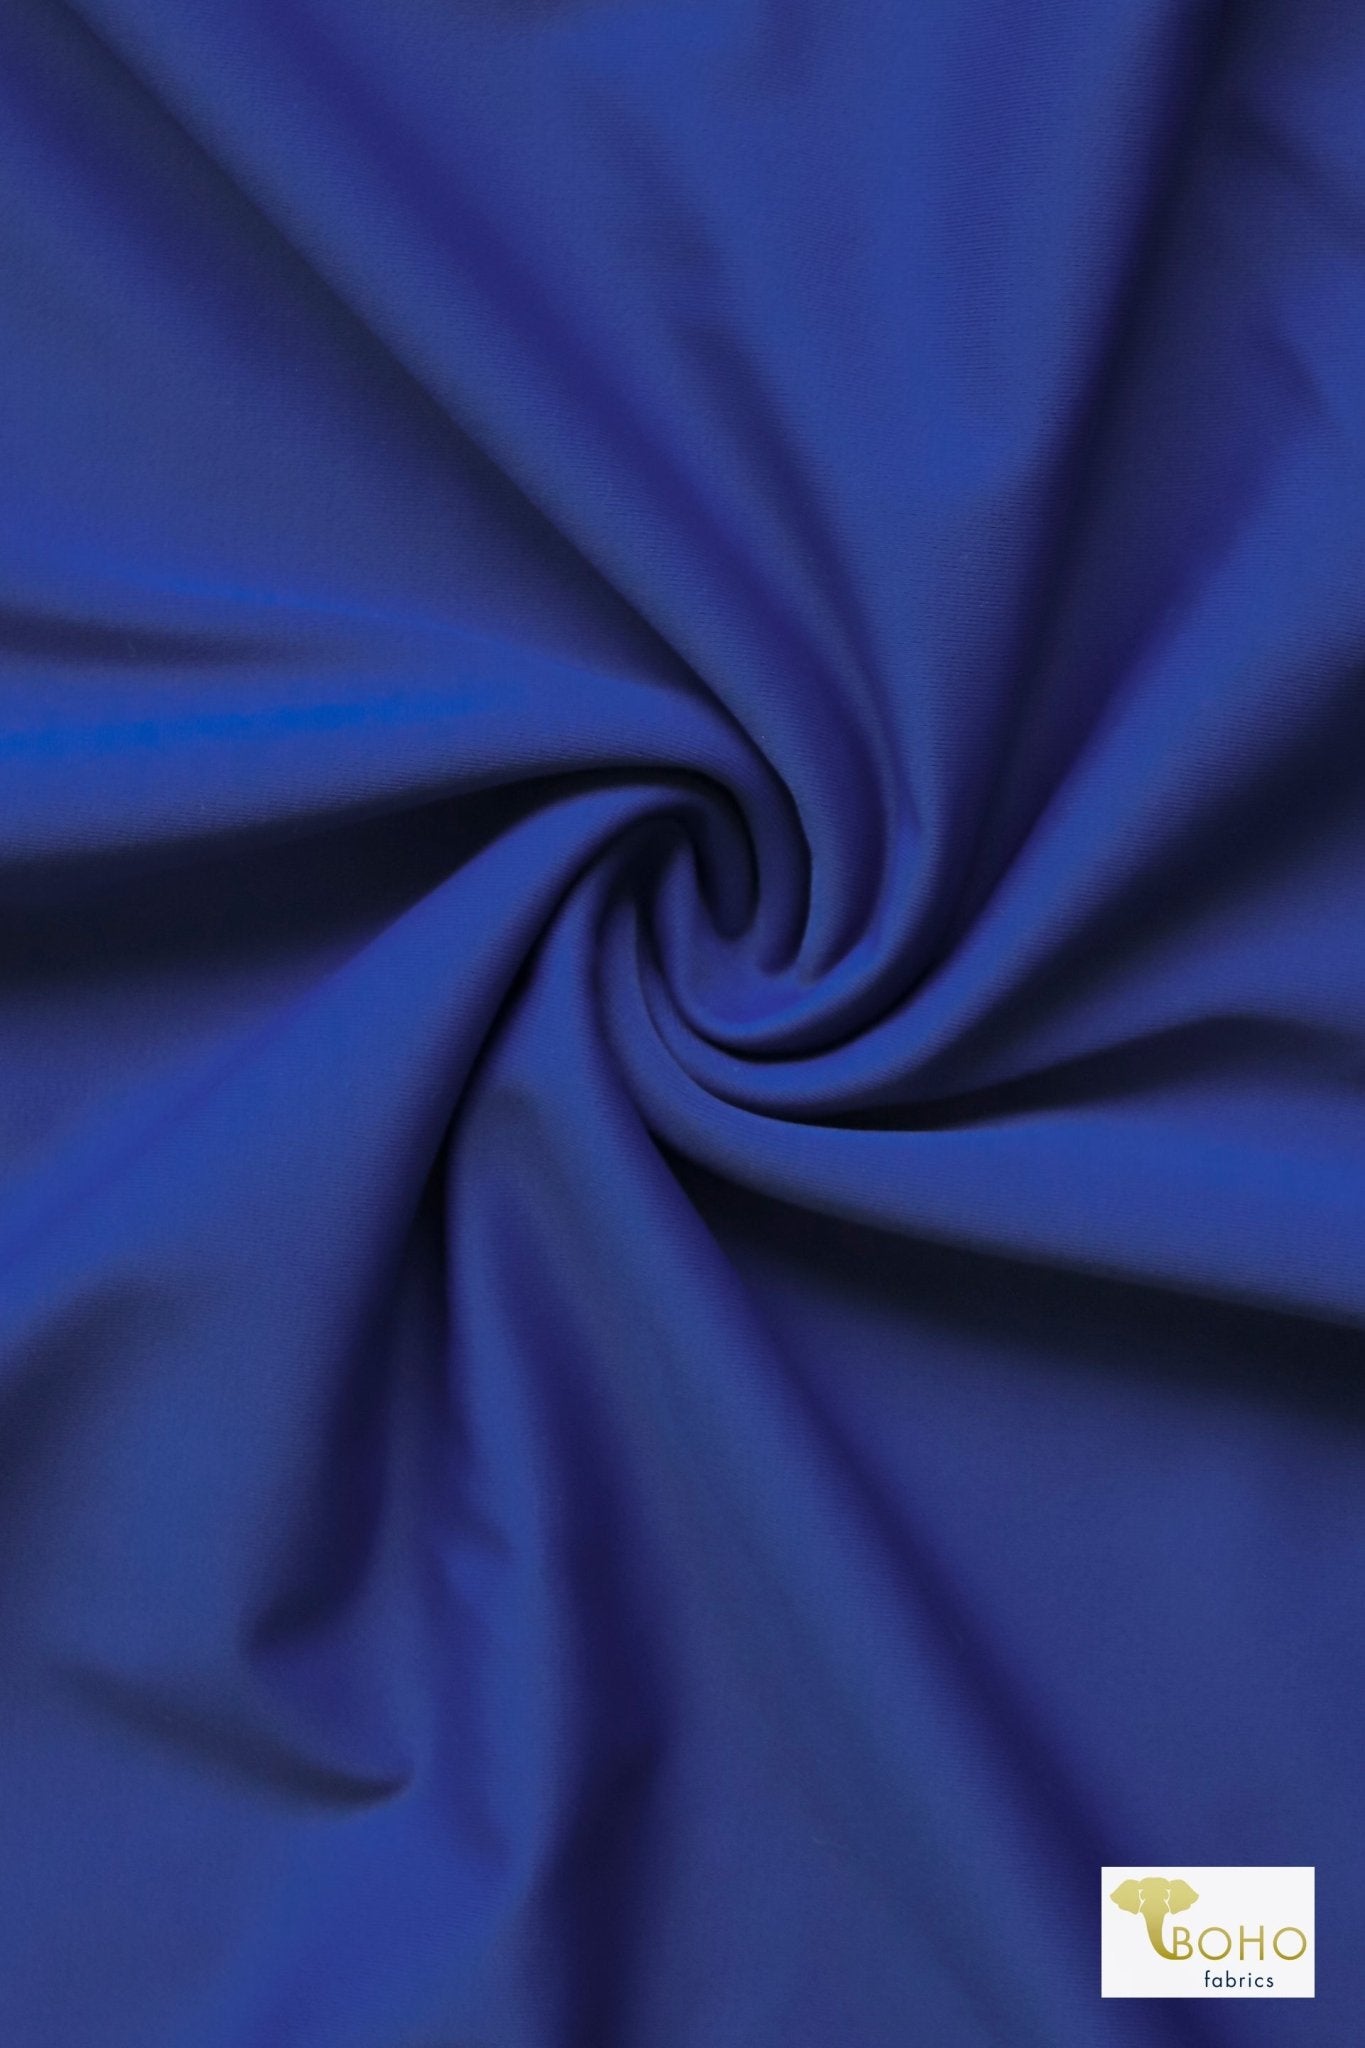 1 Yard- Last Cuts! Bright Blue, Solid Swim Knit Fabric. - Boho Fabrics